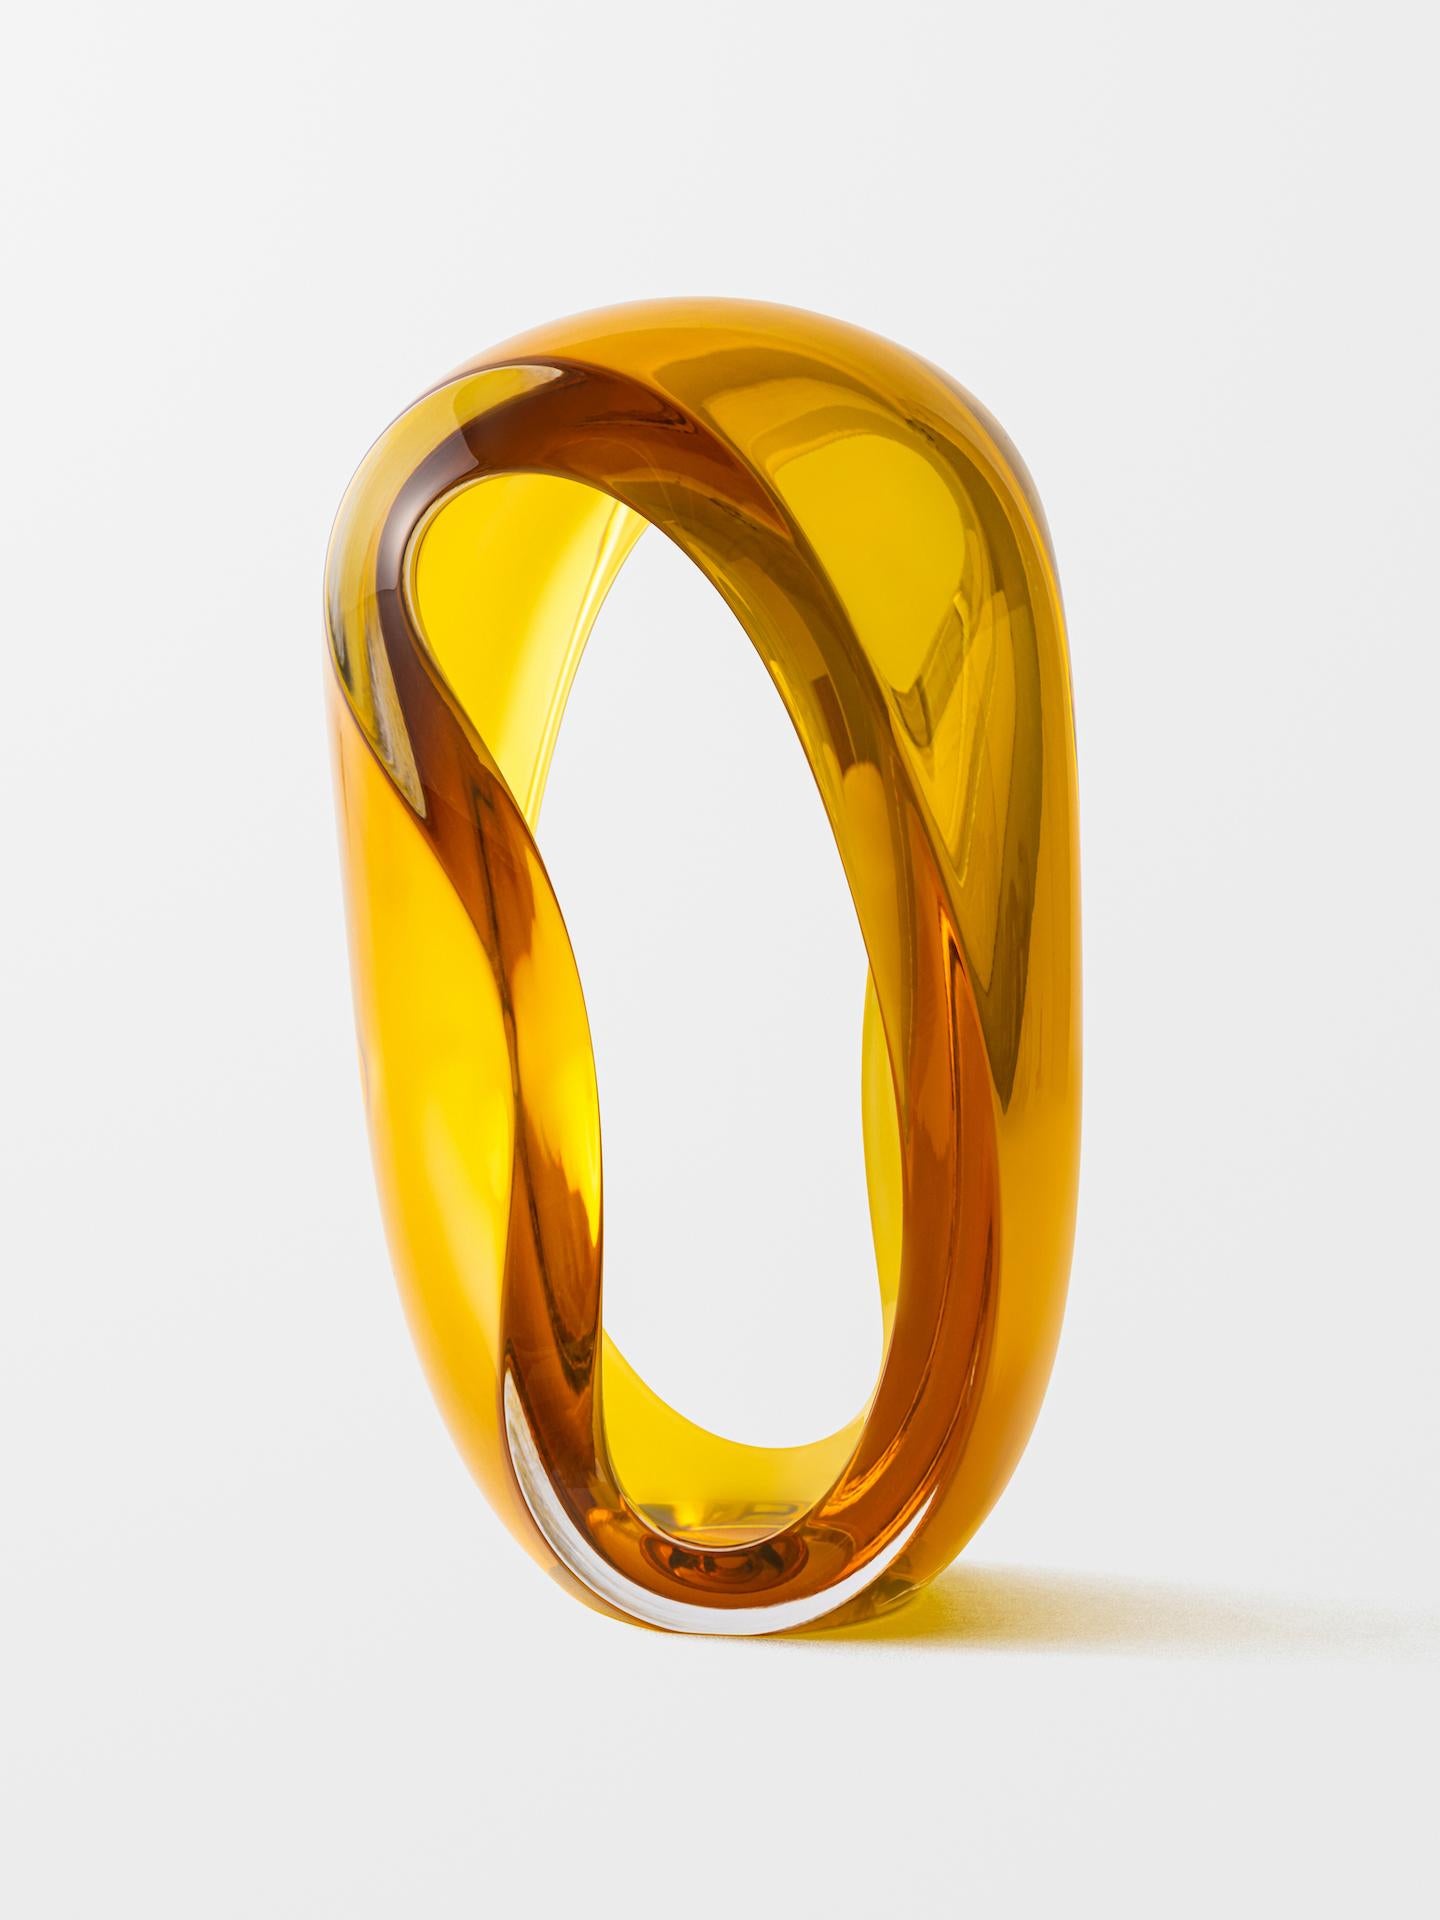 Jonas Noël Niedermann Abstract Sculpture - Loops (Gold)